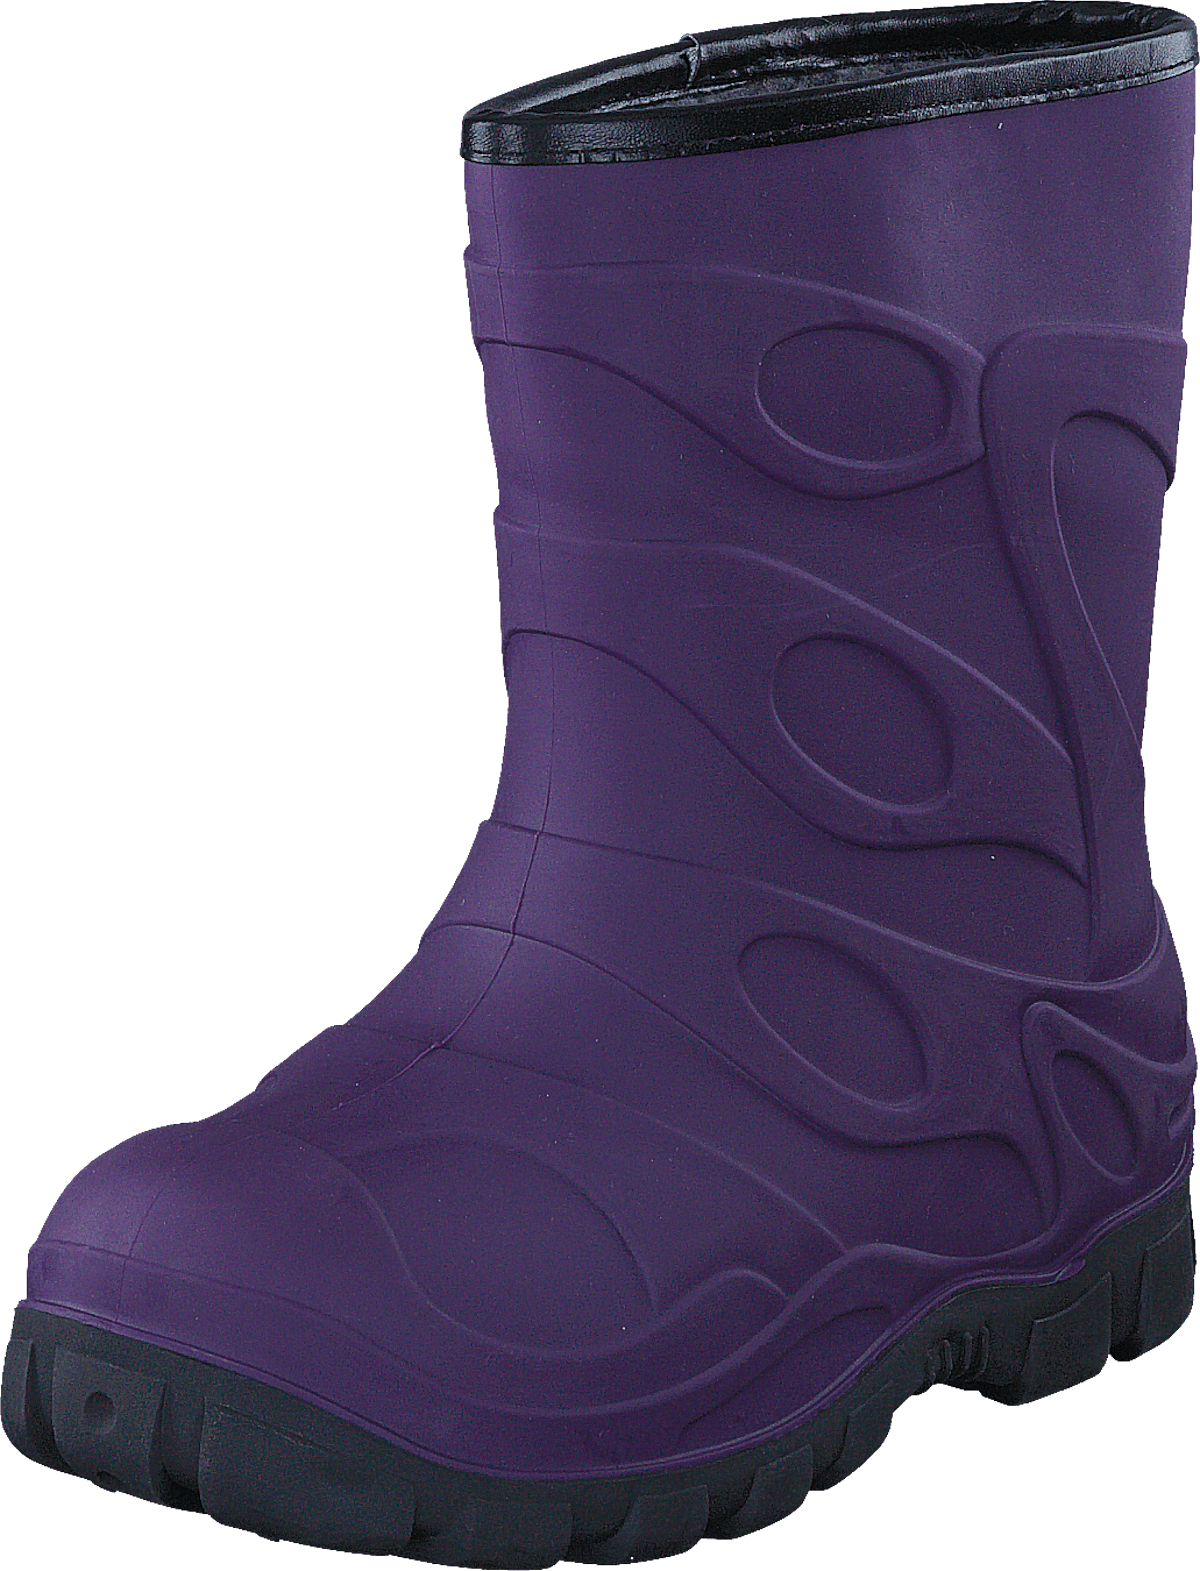 447-5046 Waterproof Warm Lined Purple